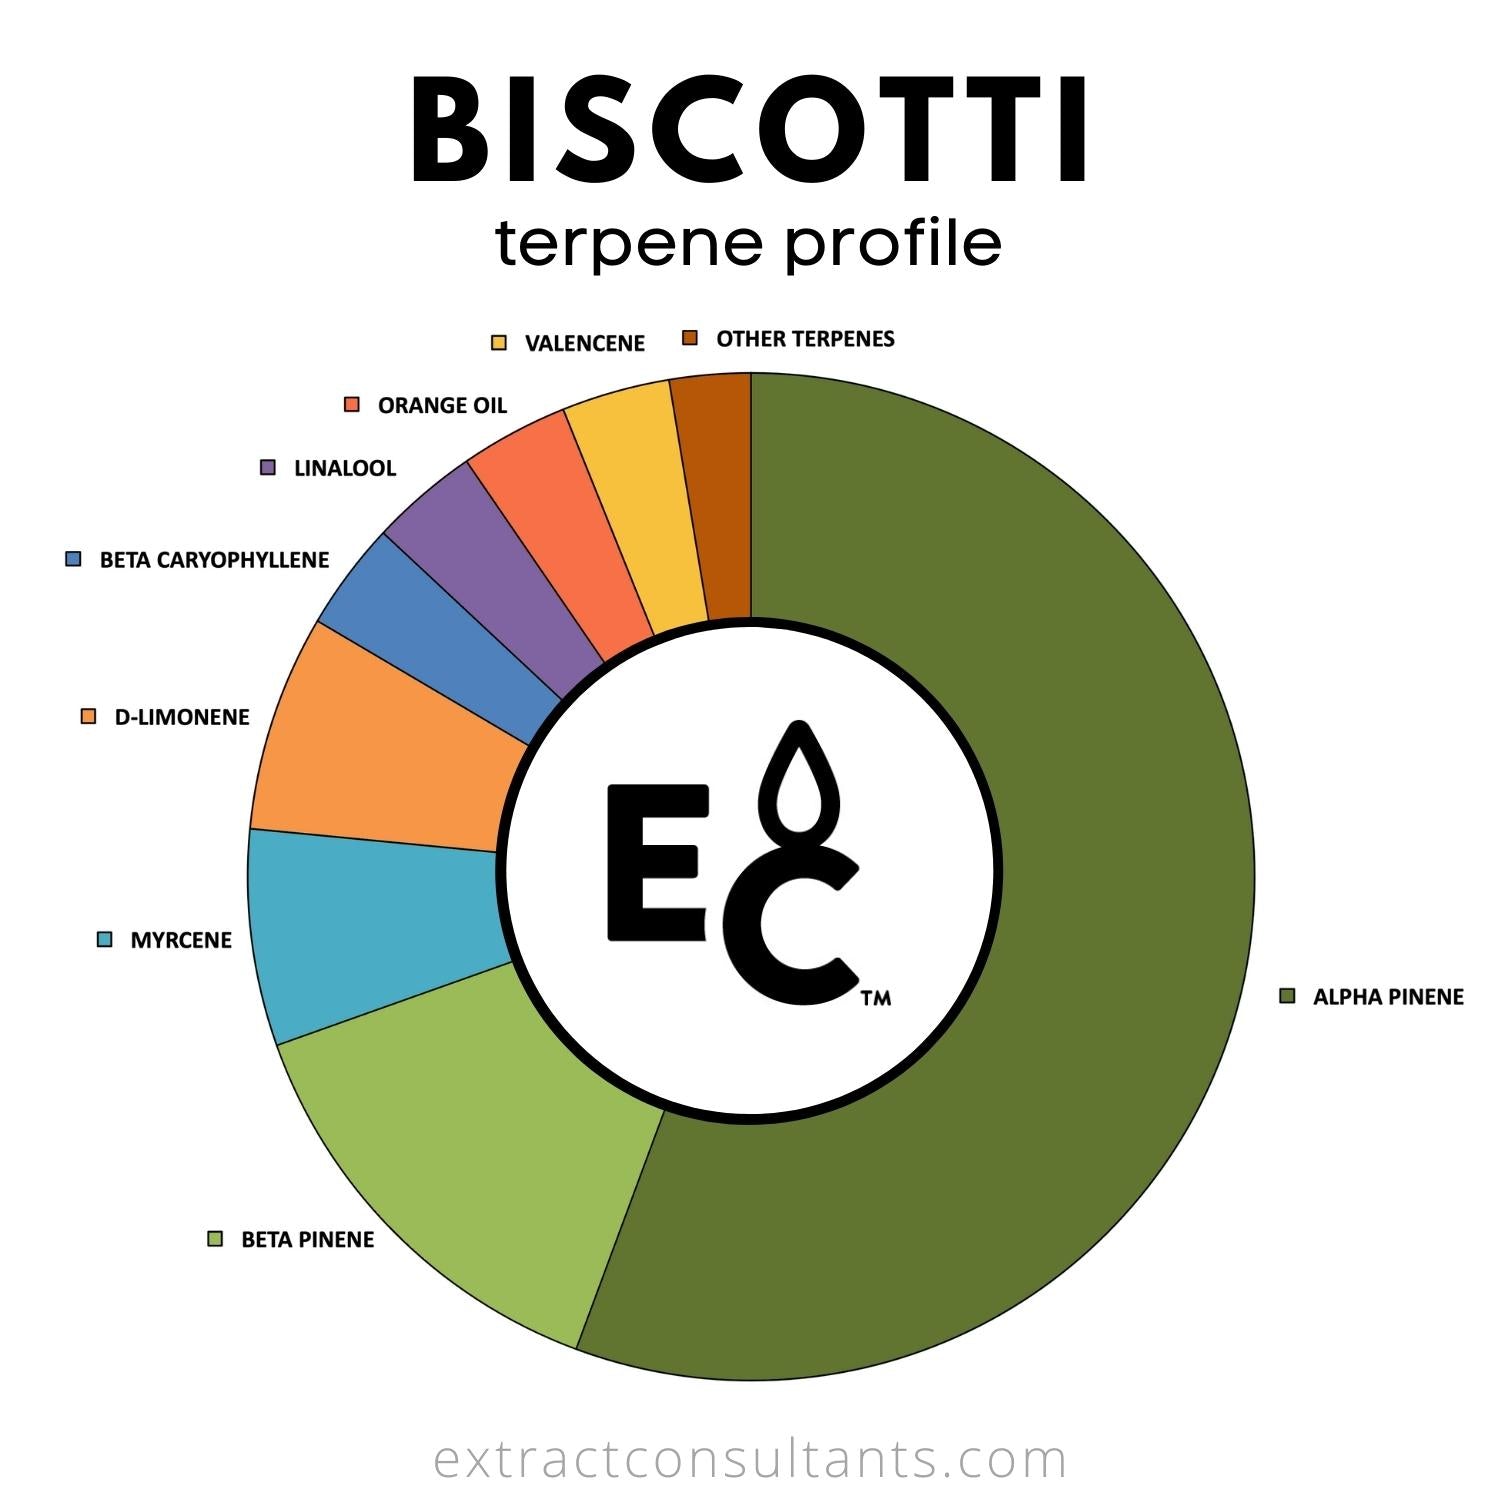 biscotti terpene profile